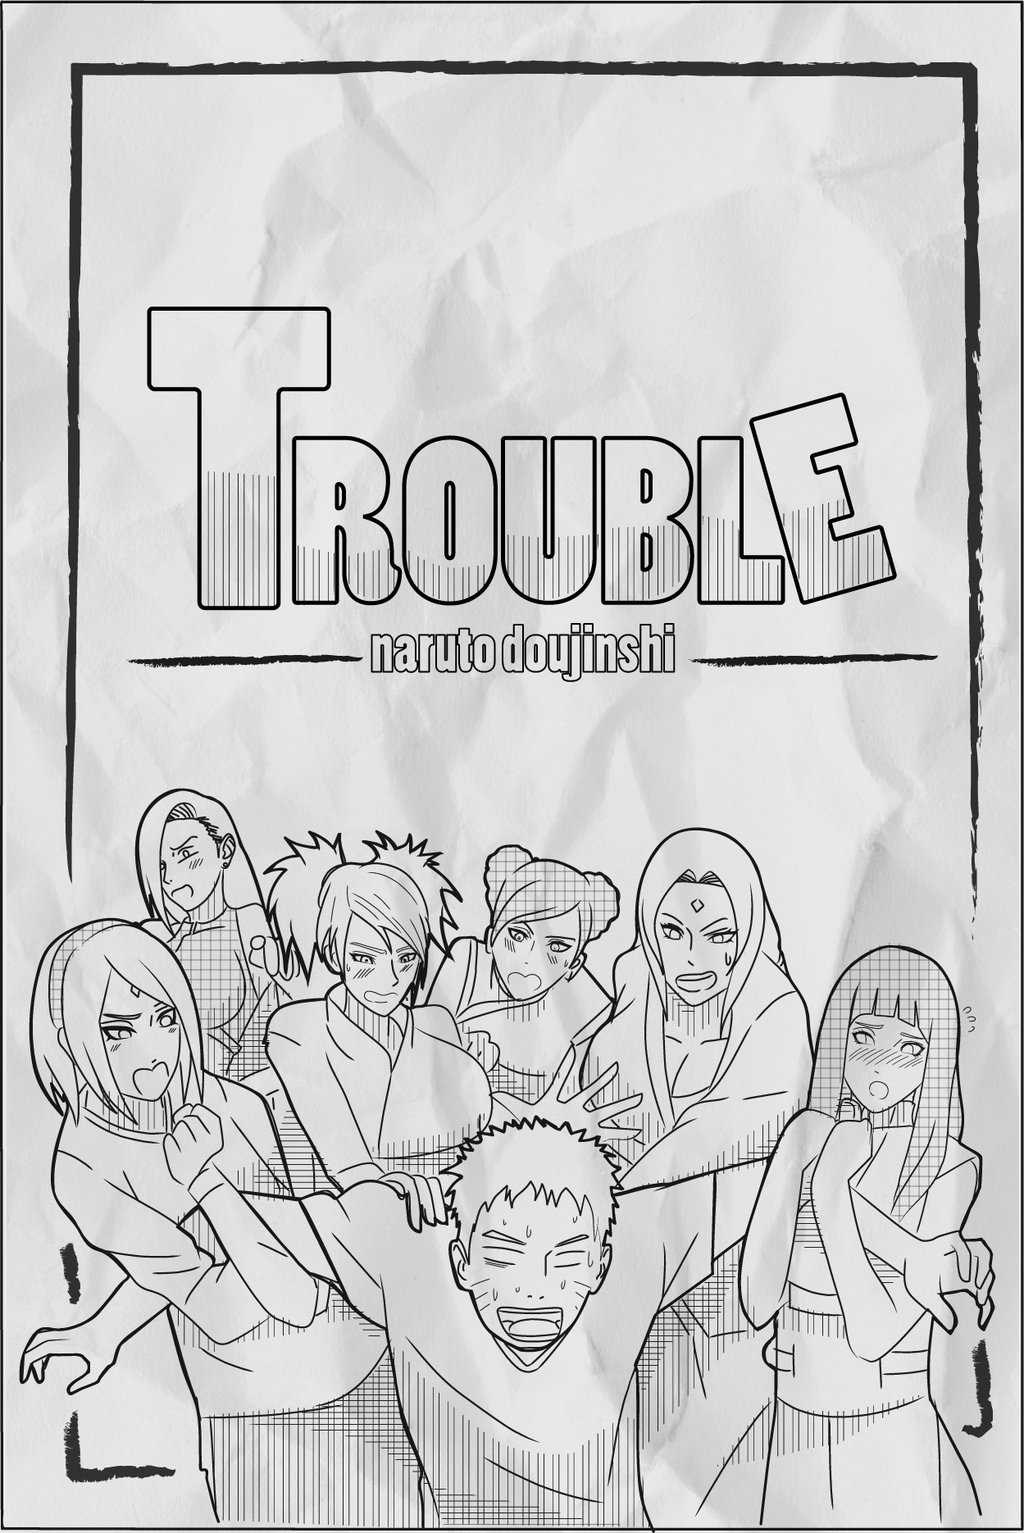 Trouble by Indy_riquez